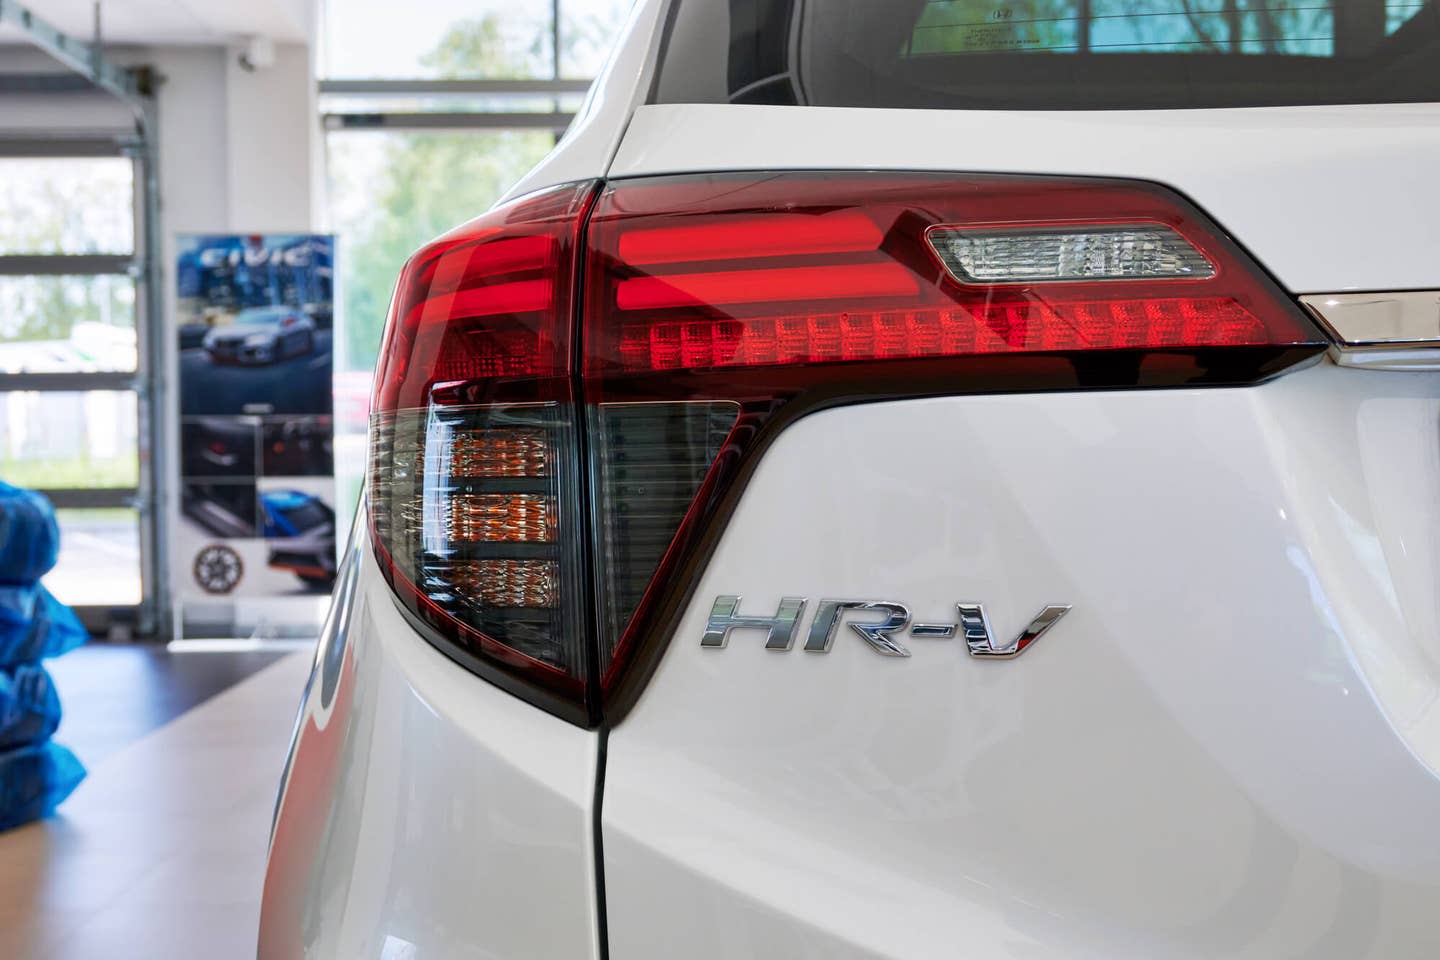 Honda HR-V 2020 model